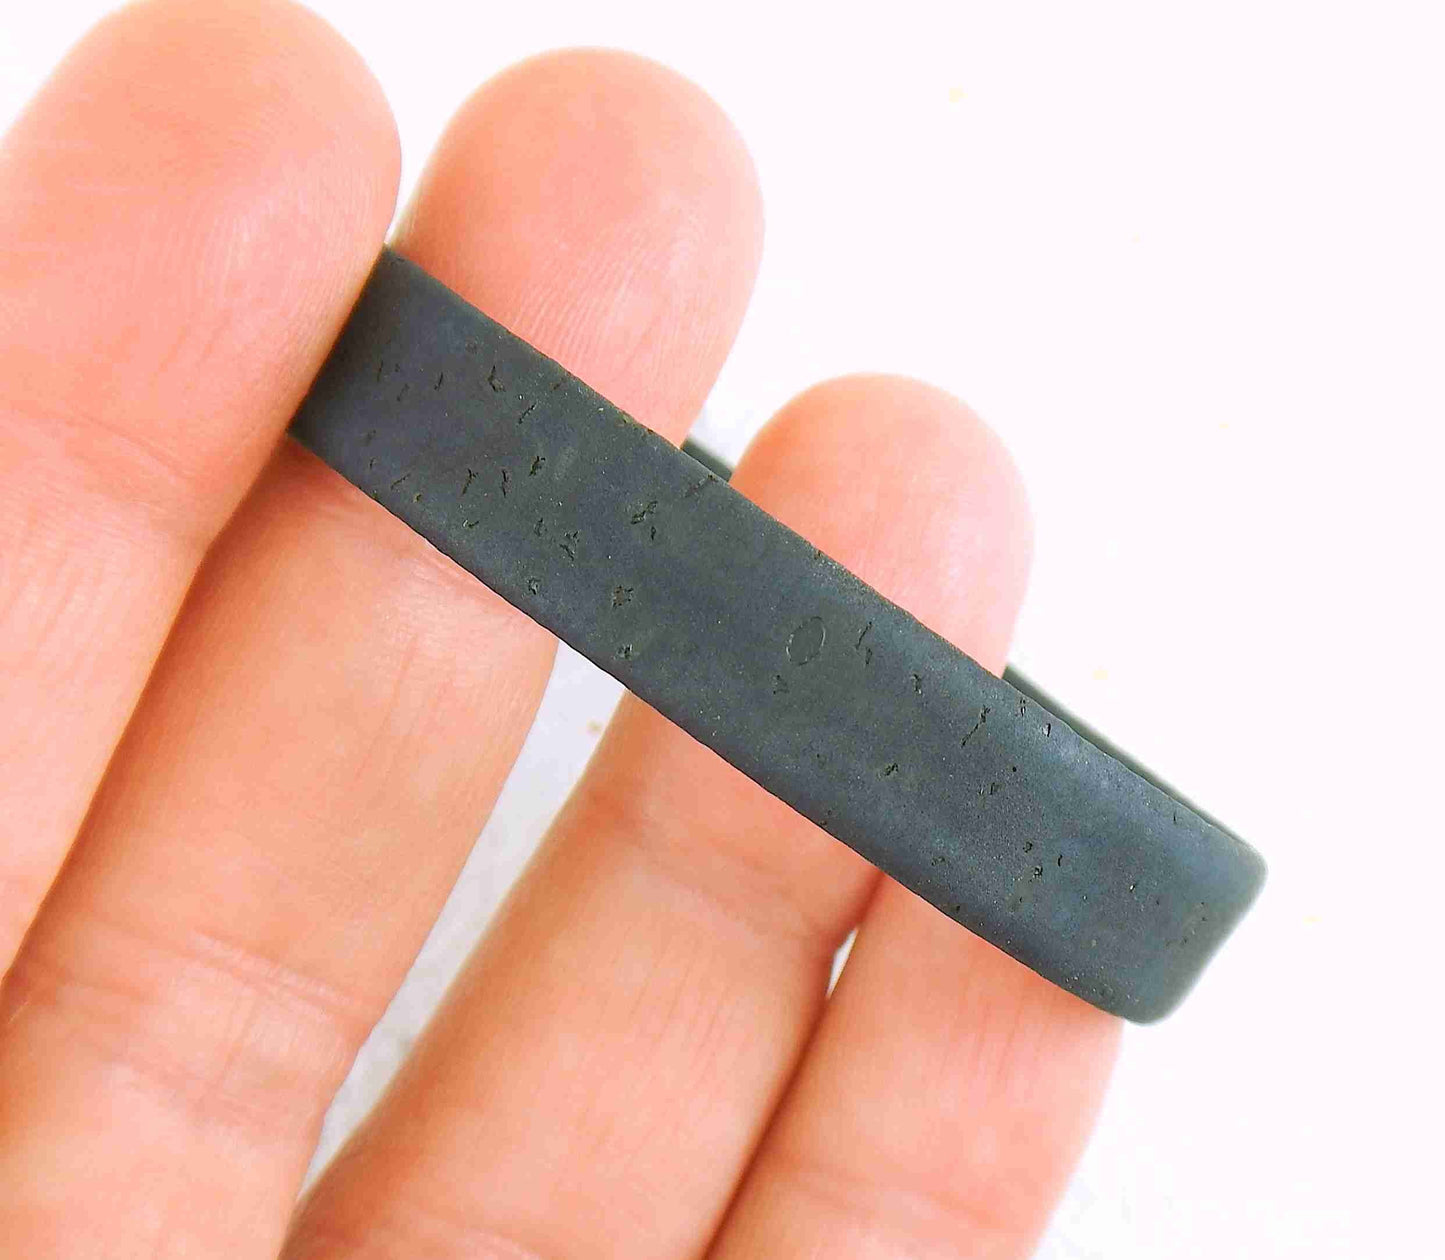 Bracelet simple 10mm en liège offert en 3 couleurs (gris, brun, noir), fermoir magnétique acier inoxydable